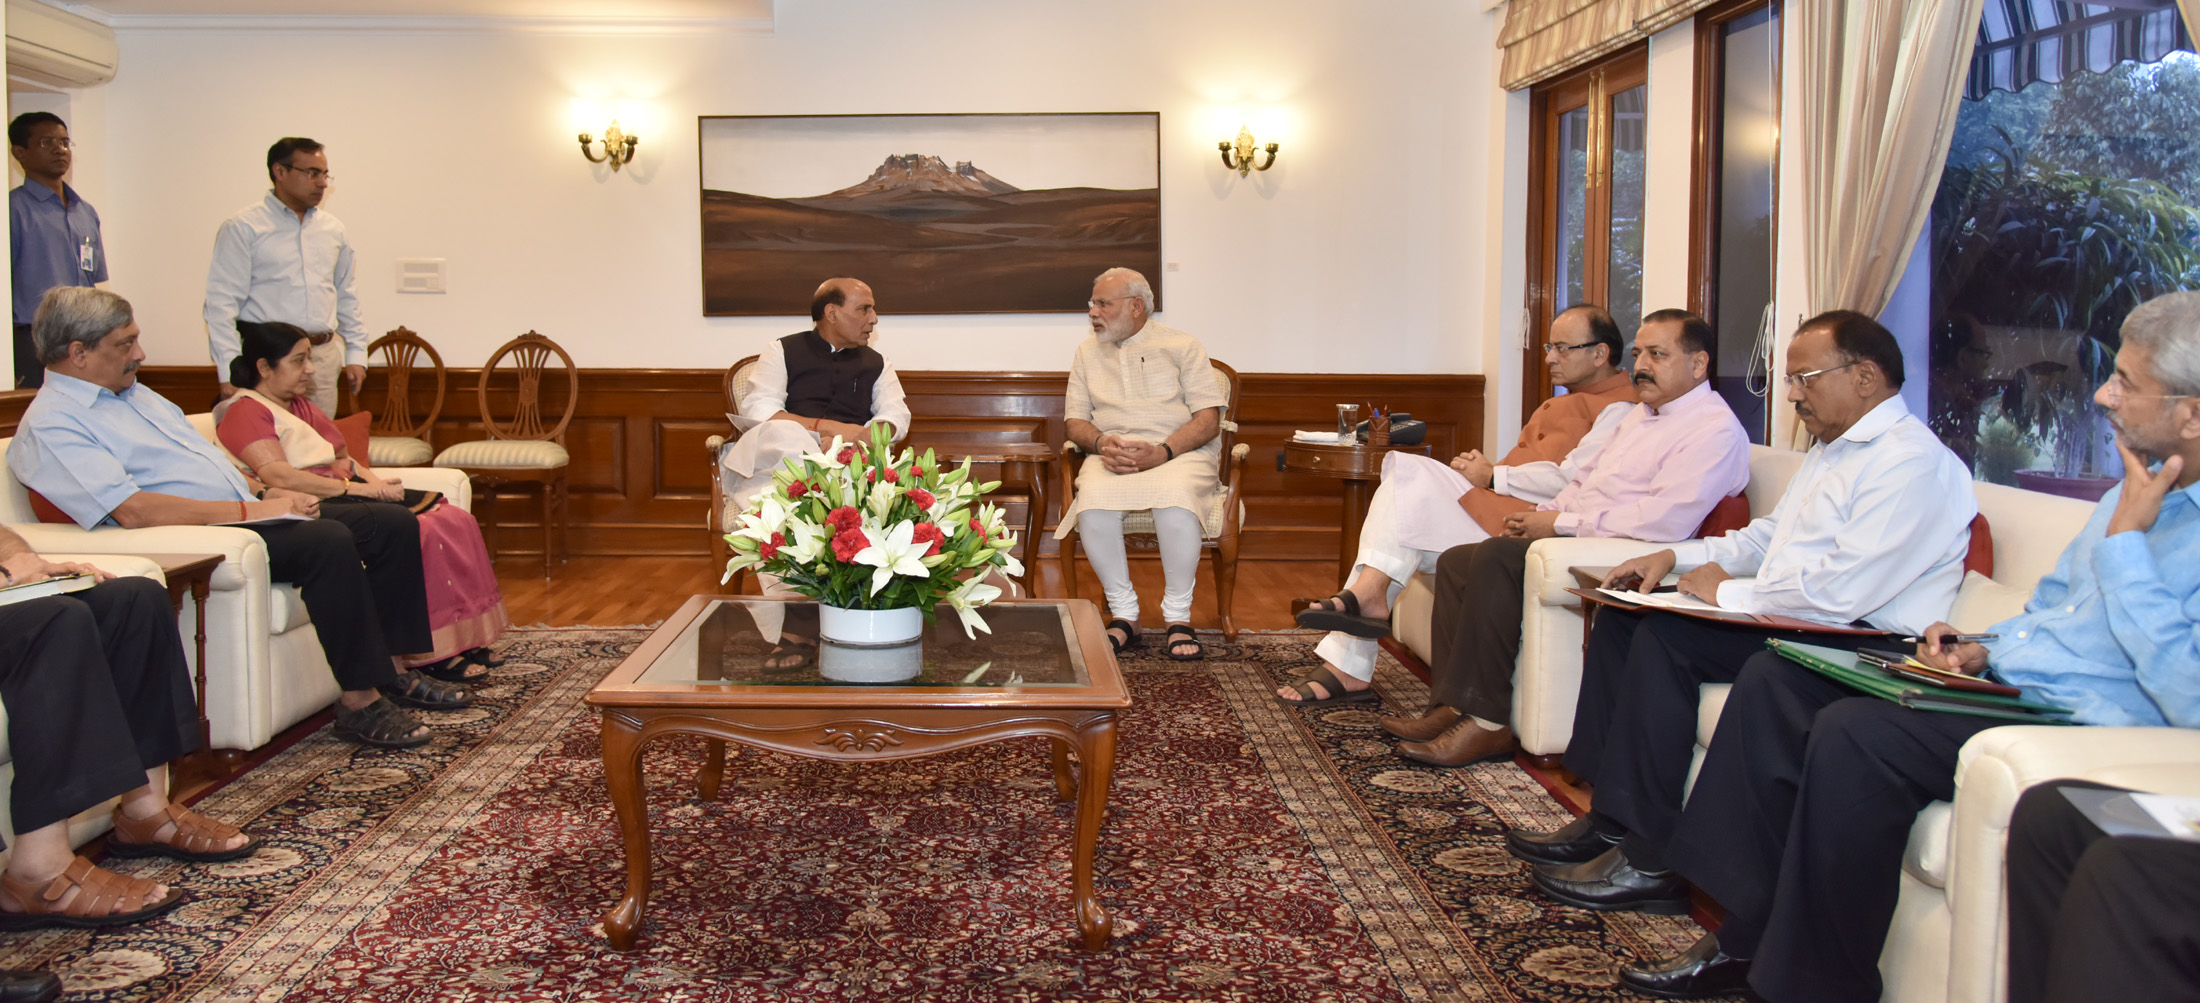 PM Modi - Meeting on Kashmir Unrest